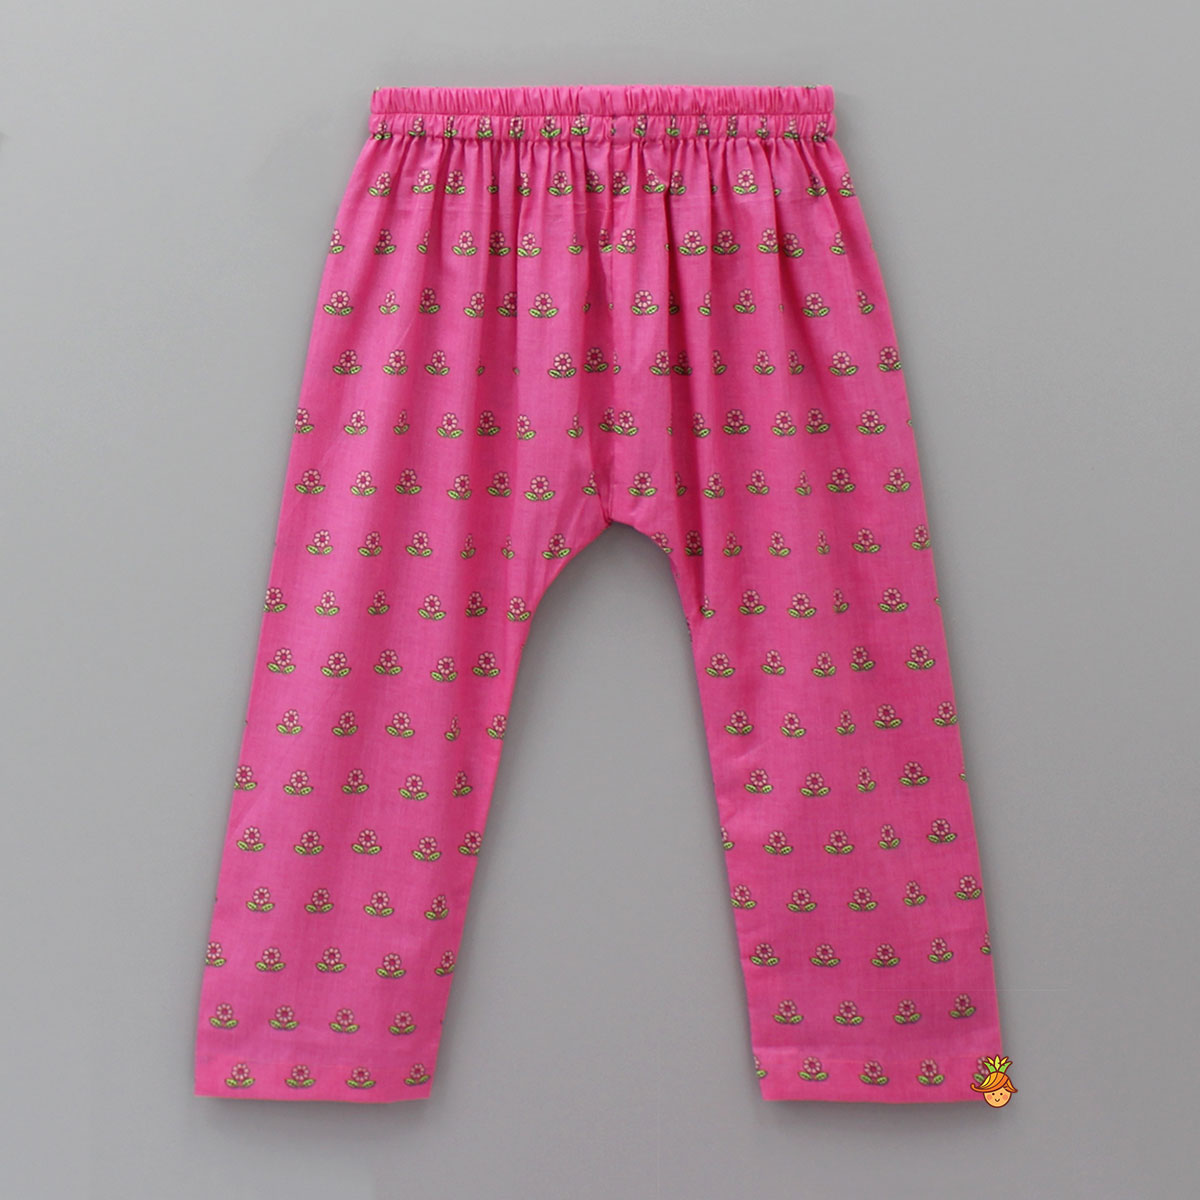 Floral Printed Pink Sleepwear